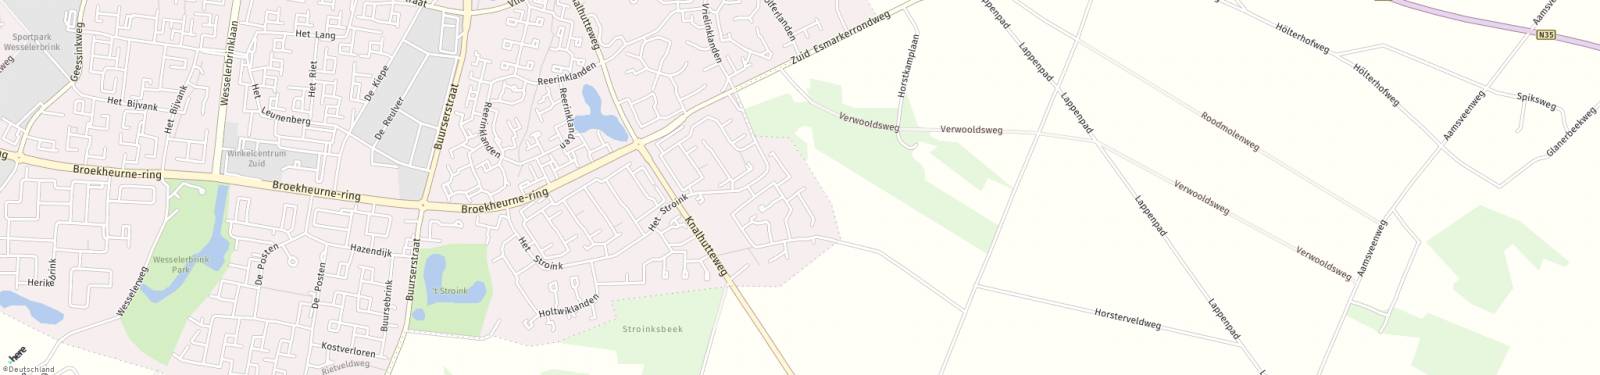 Kaart met locatie Huurwoning Hanenberglanden